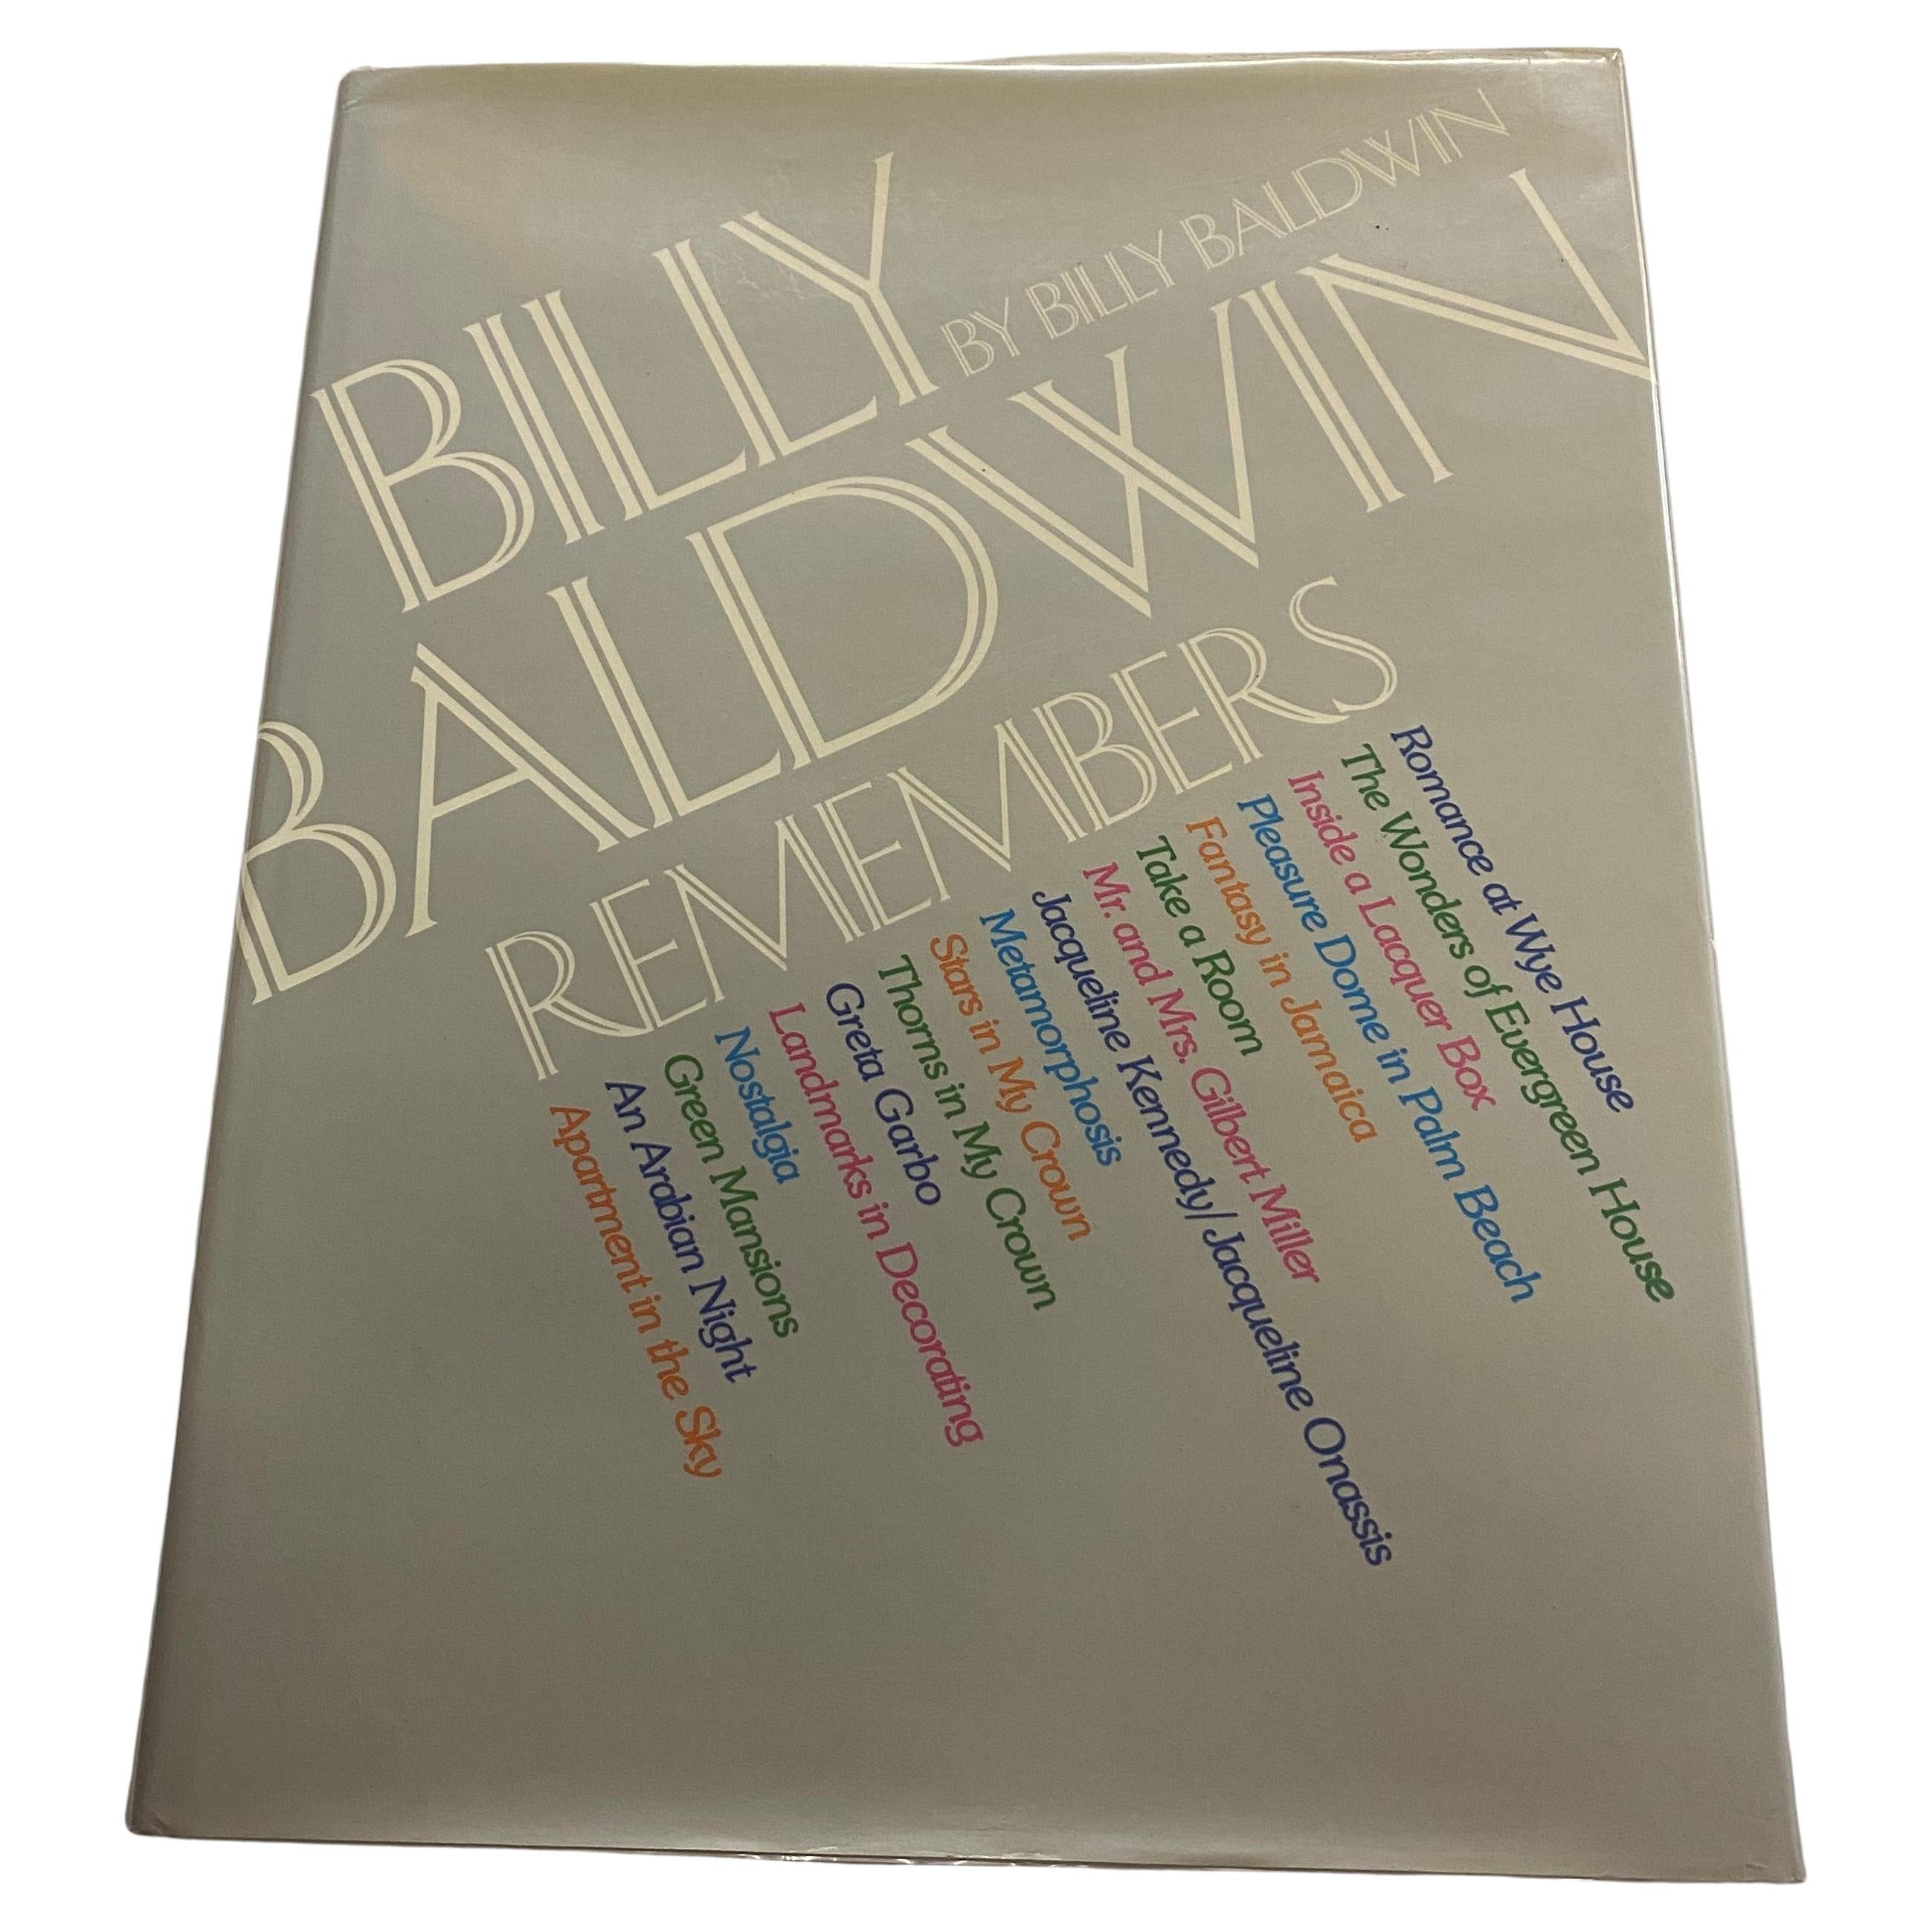 Billy Baldwin Remembers by Billy Baldwin (Livre)